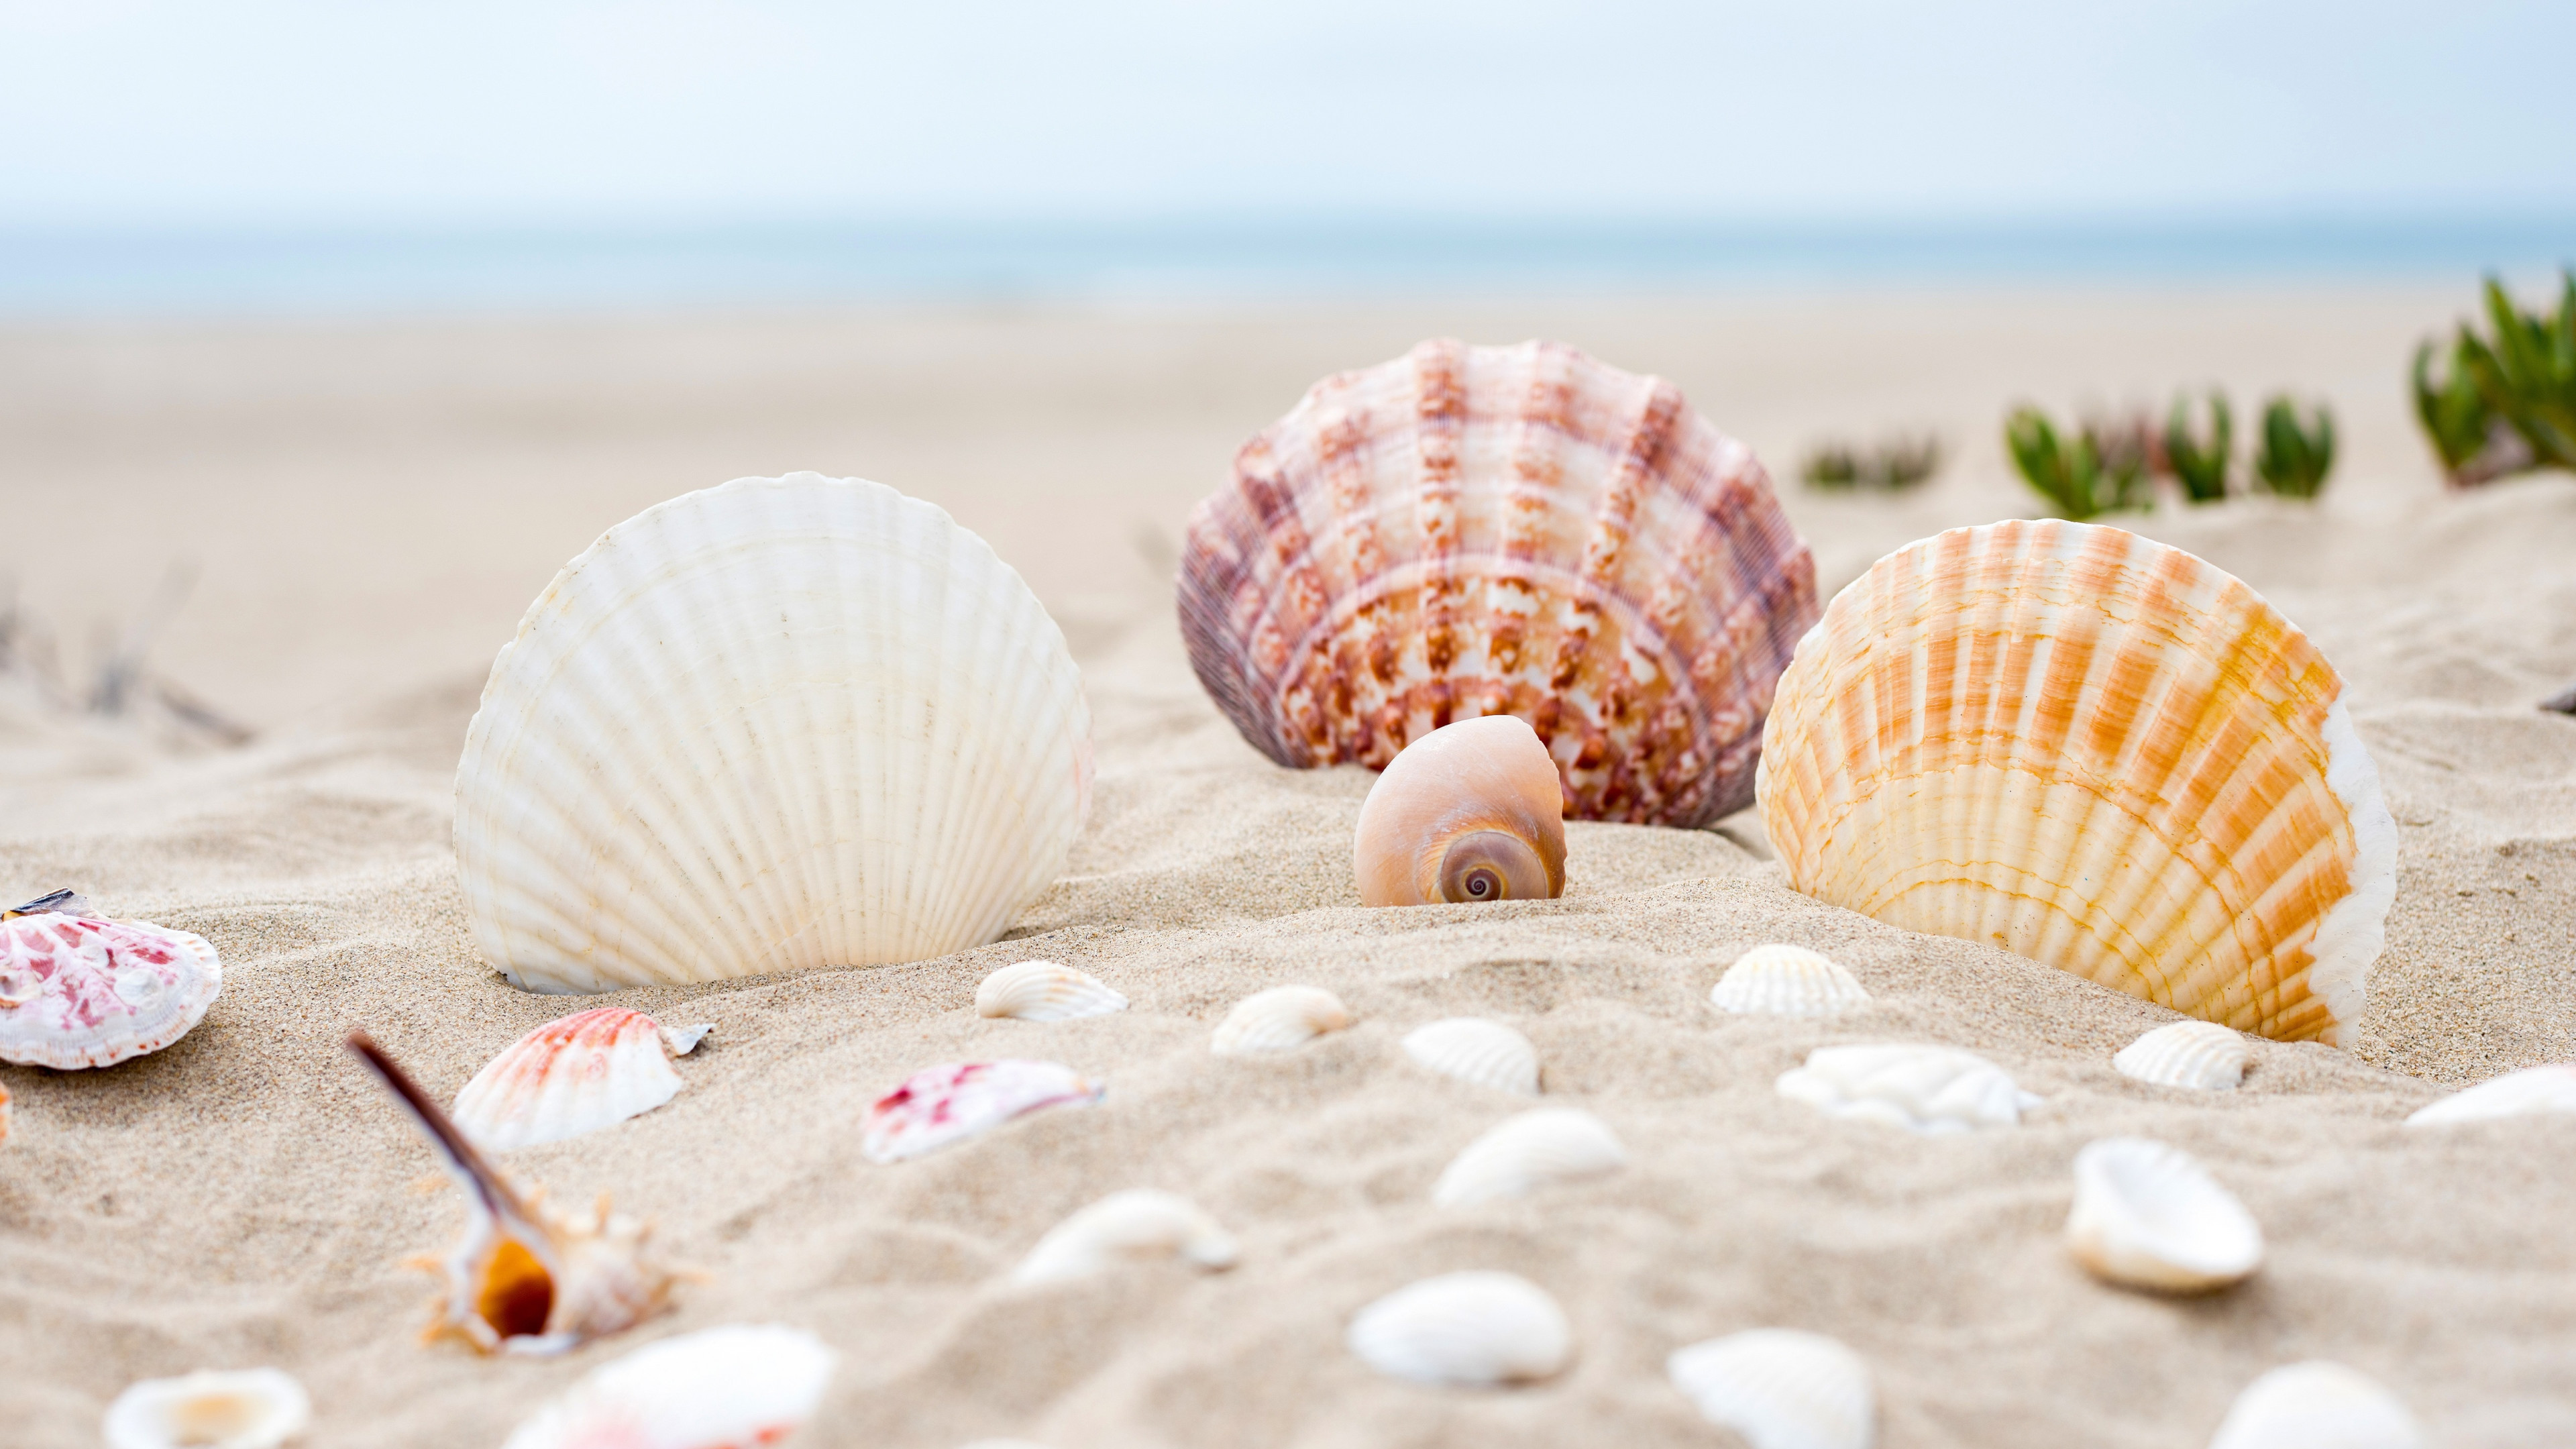 Shells on the ocean beach wallpaper 3840x2160